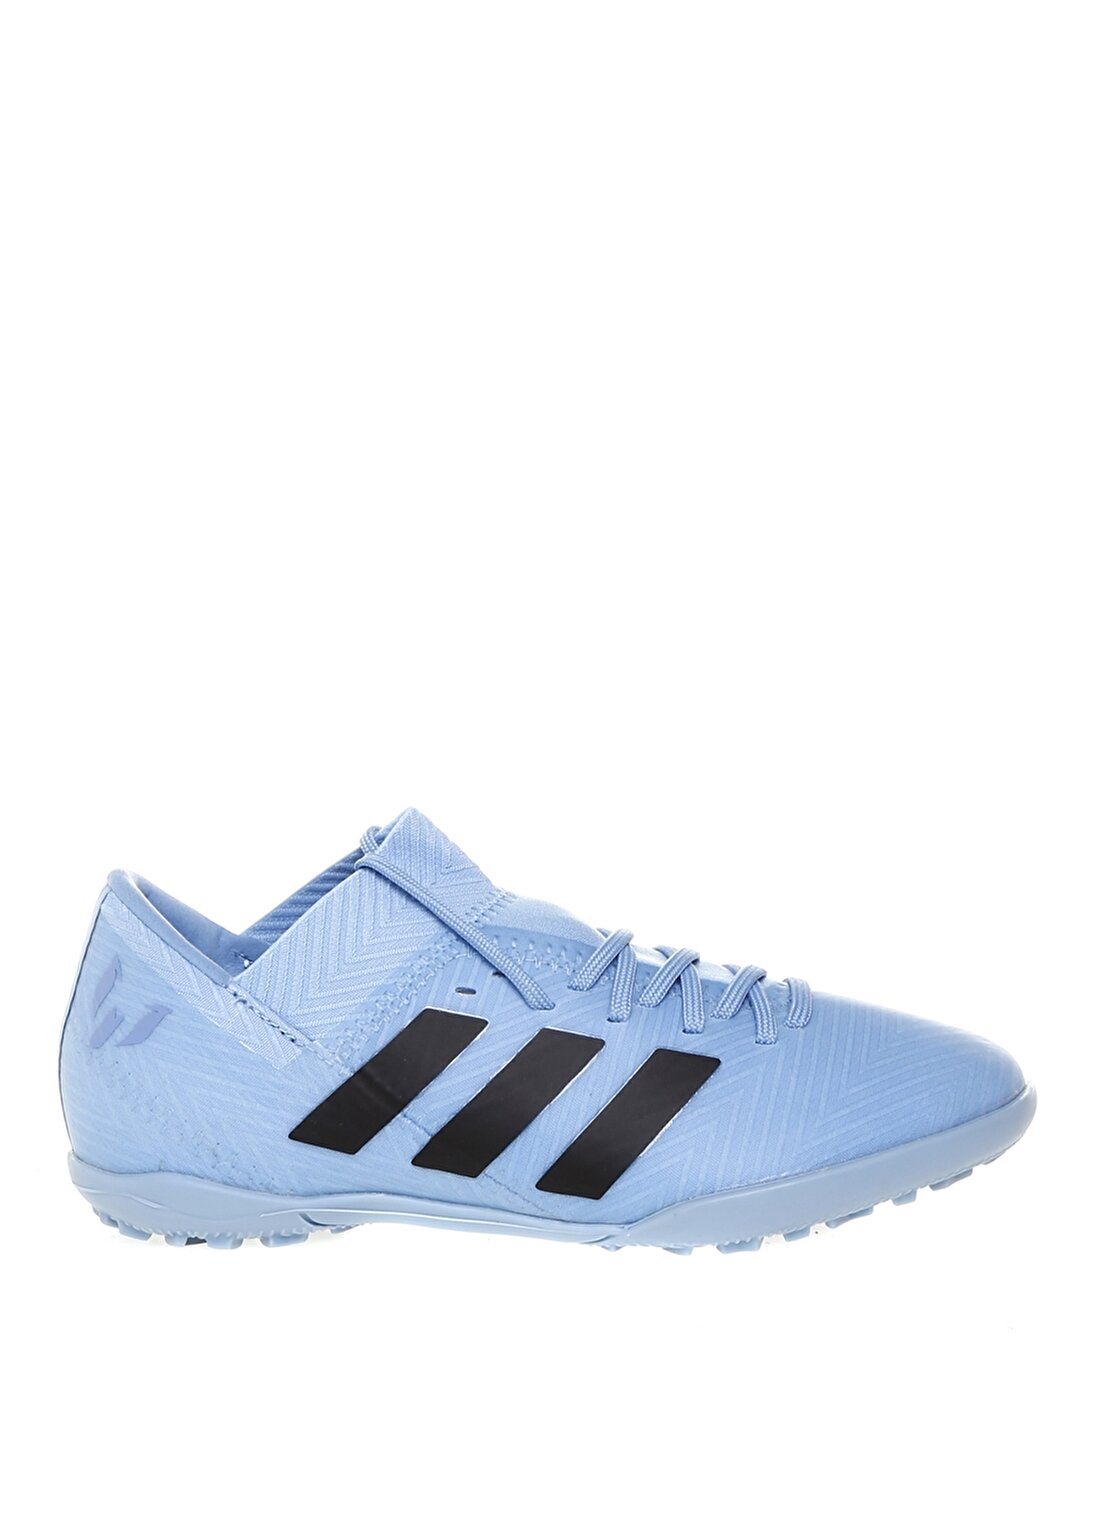 Adidas Nemeziz Messi Tango 18.3 T Halı Saha Ayakkabısı